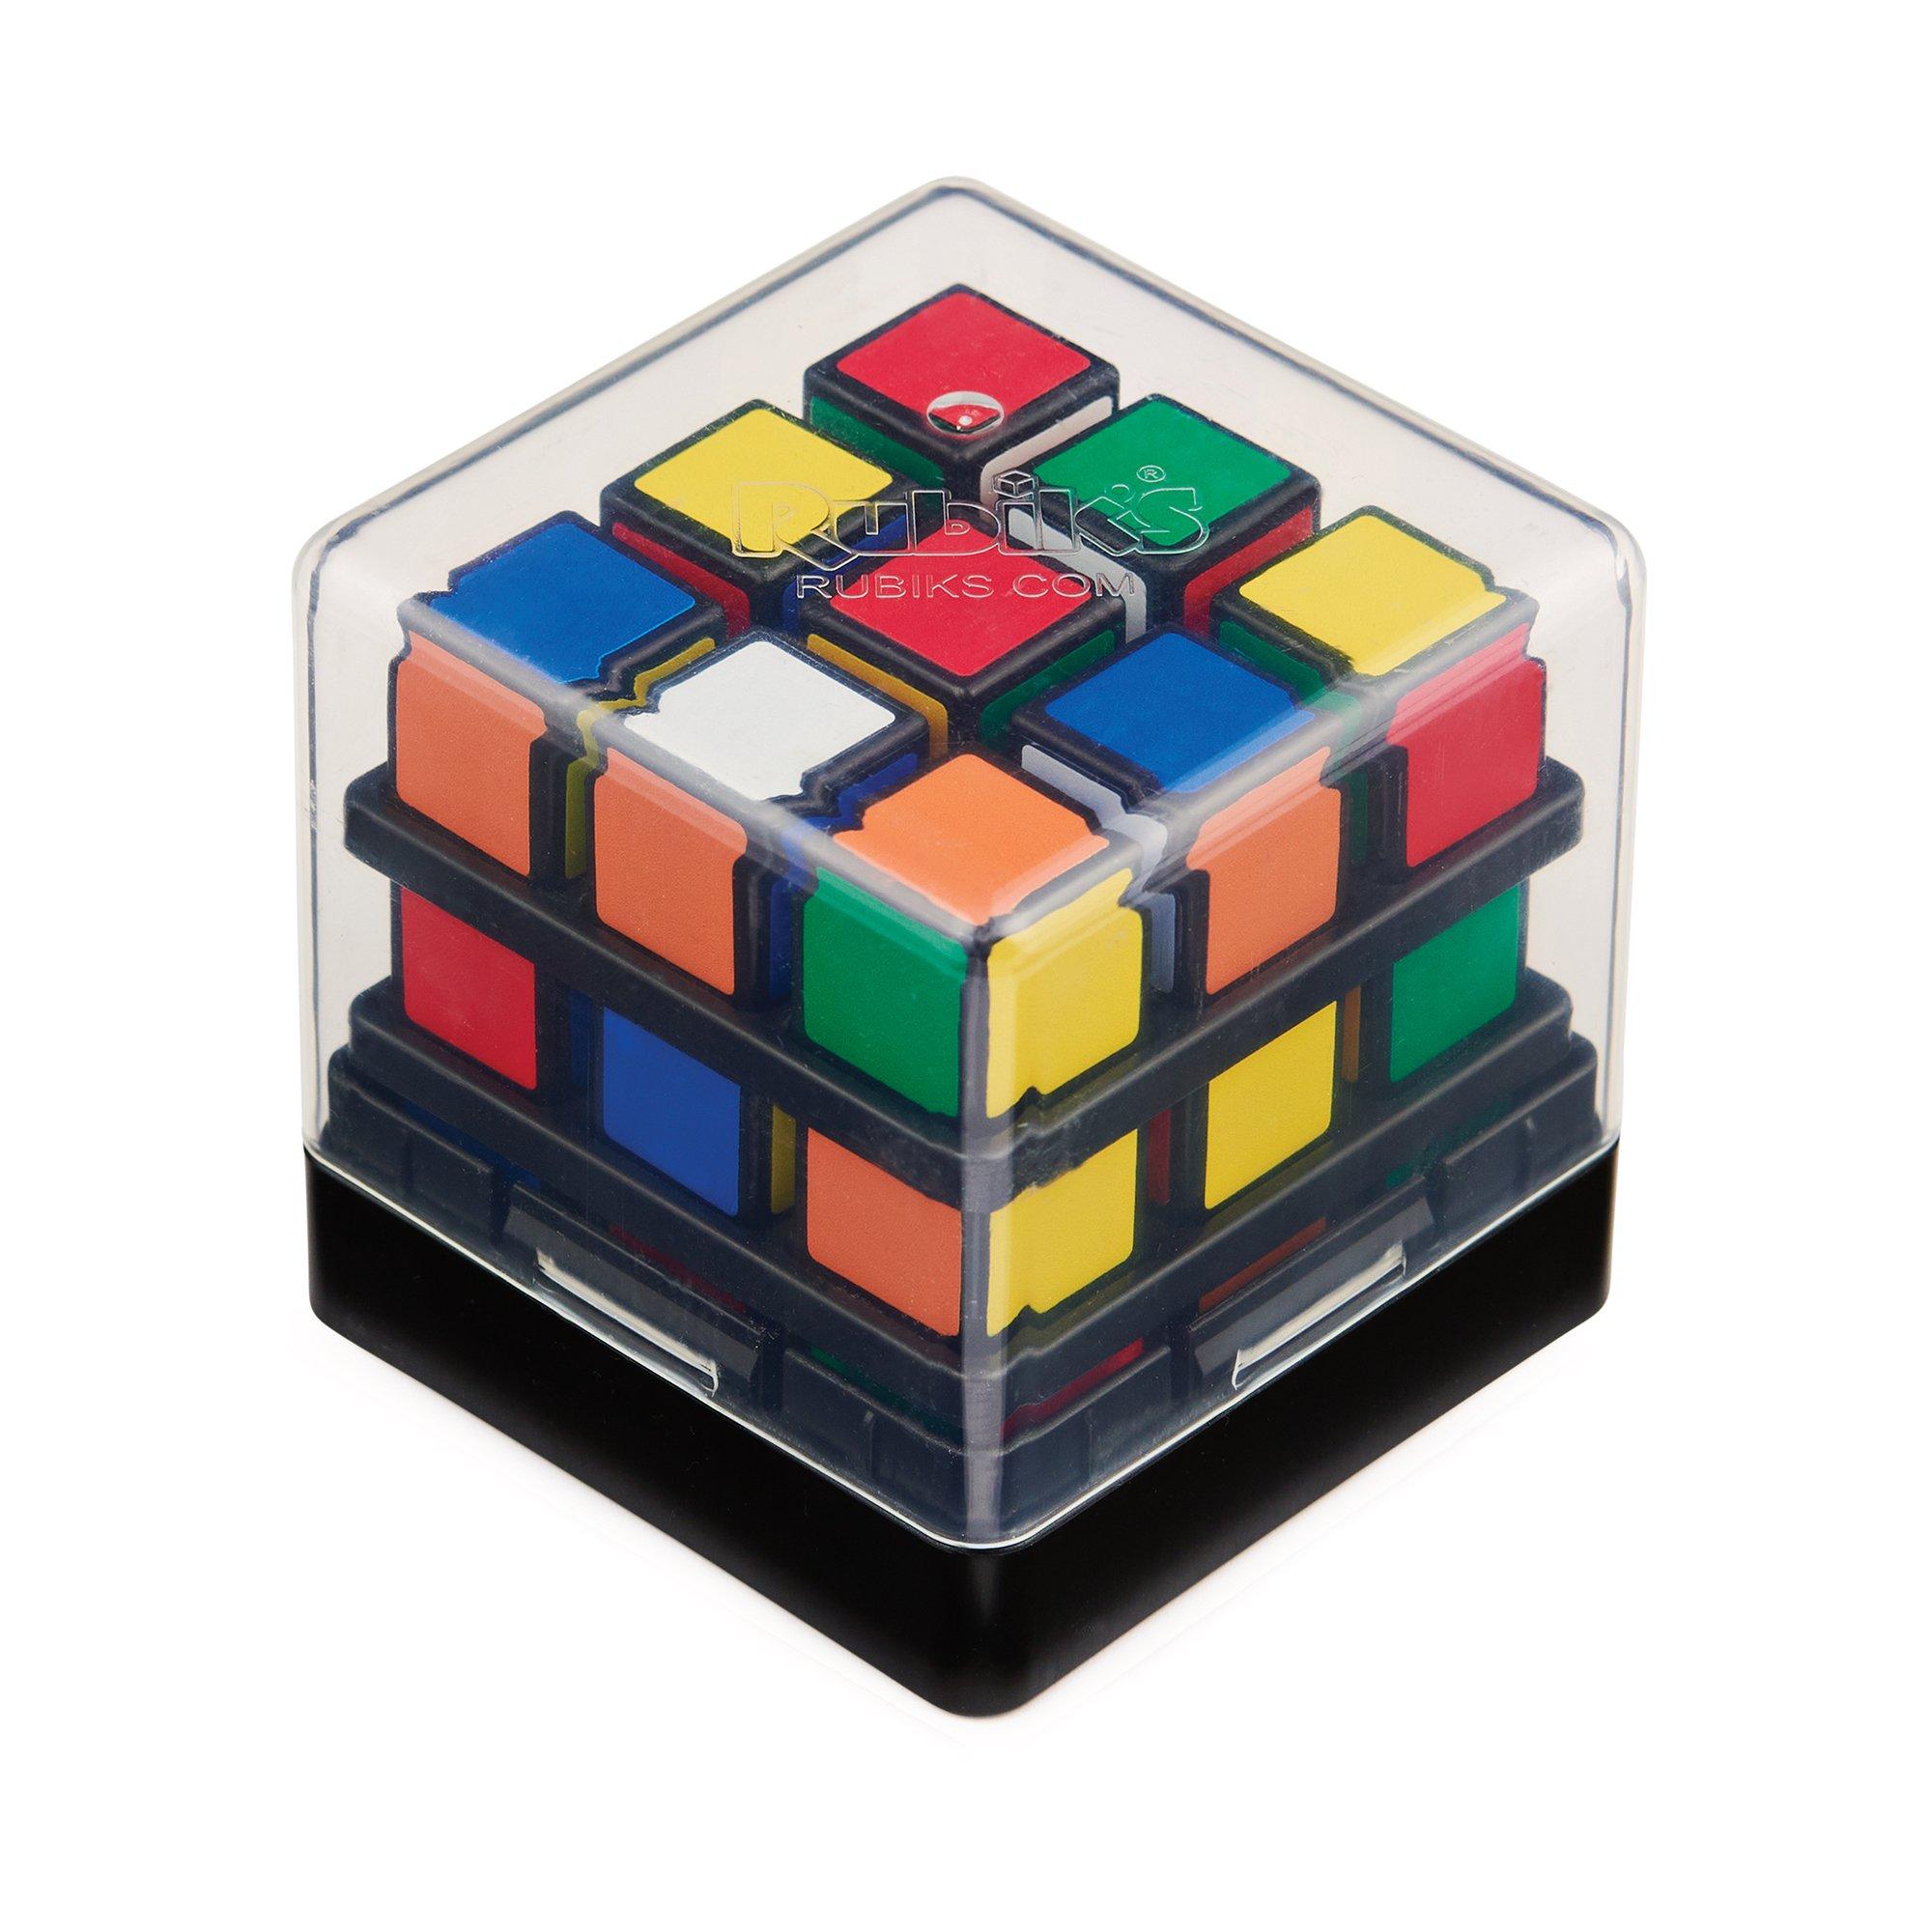 Touch cube. Кубик Рубика спираль. Супер флип кубик Рубика. Кубик Рубика корпоративный подарок. Ideal Toy Corporation кубик Рубика.